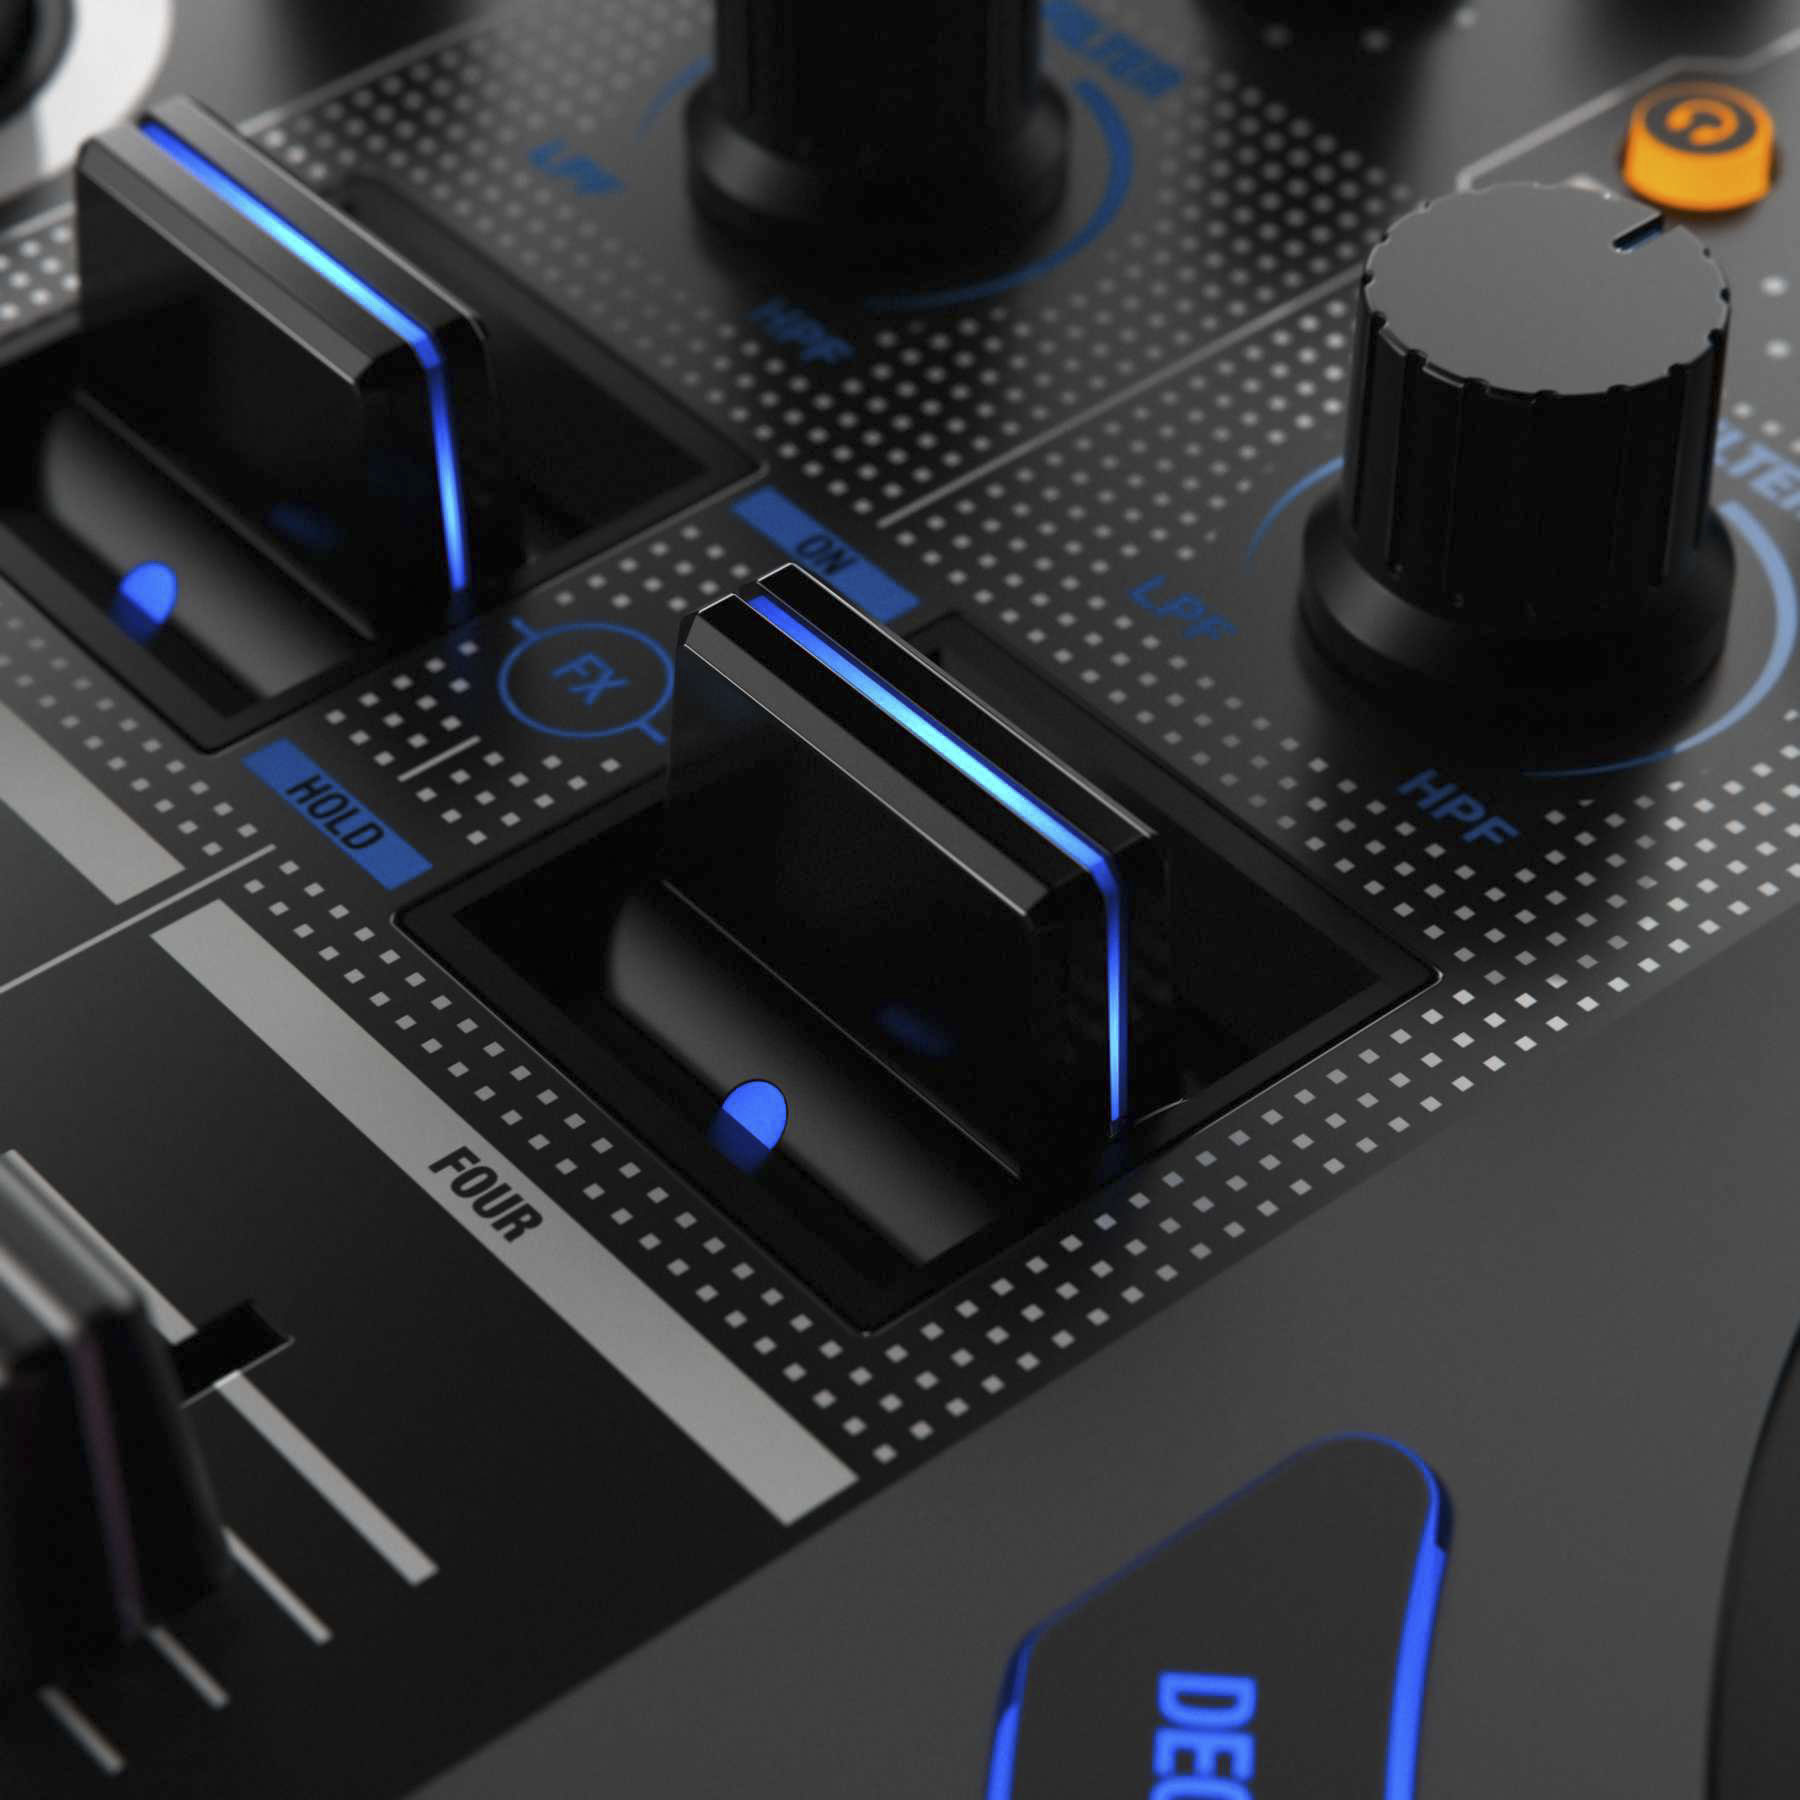 Palancas de efectos en la controladora DJ Reloop Mixon 8 Pro